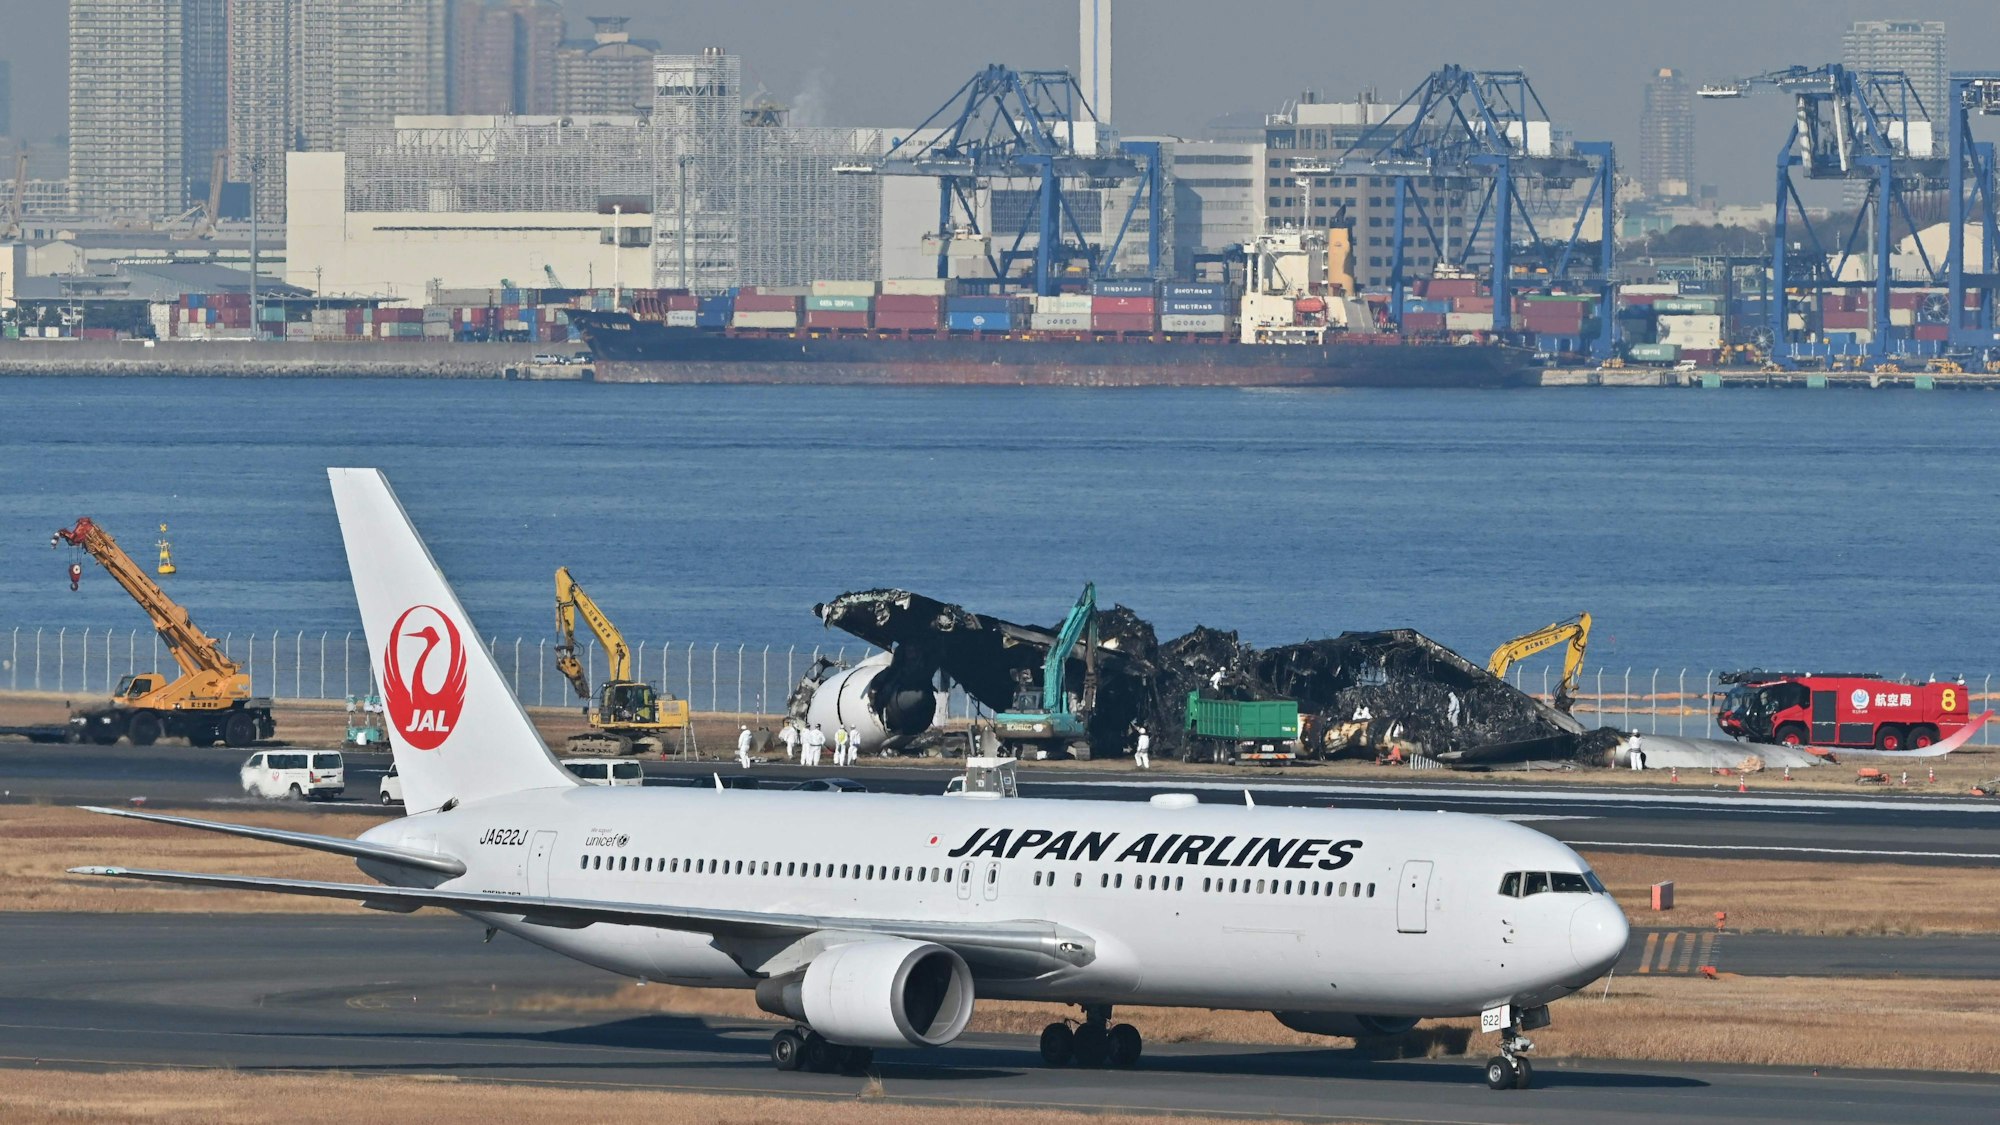 Am Flughafen Tokio-Haneda kam es zu Ausfällen und Verspätungen, einer der größten Flughäfen Asiens wurde für mehrere Stunden komplett gesperrt.